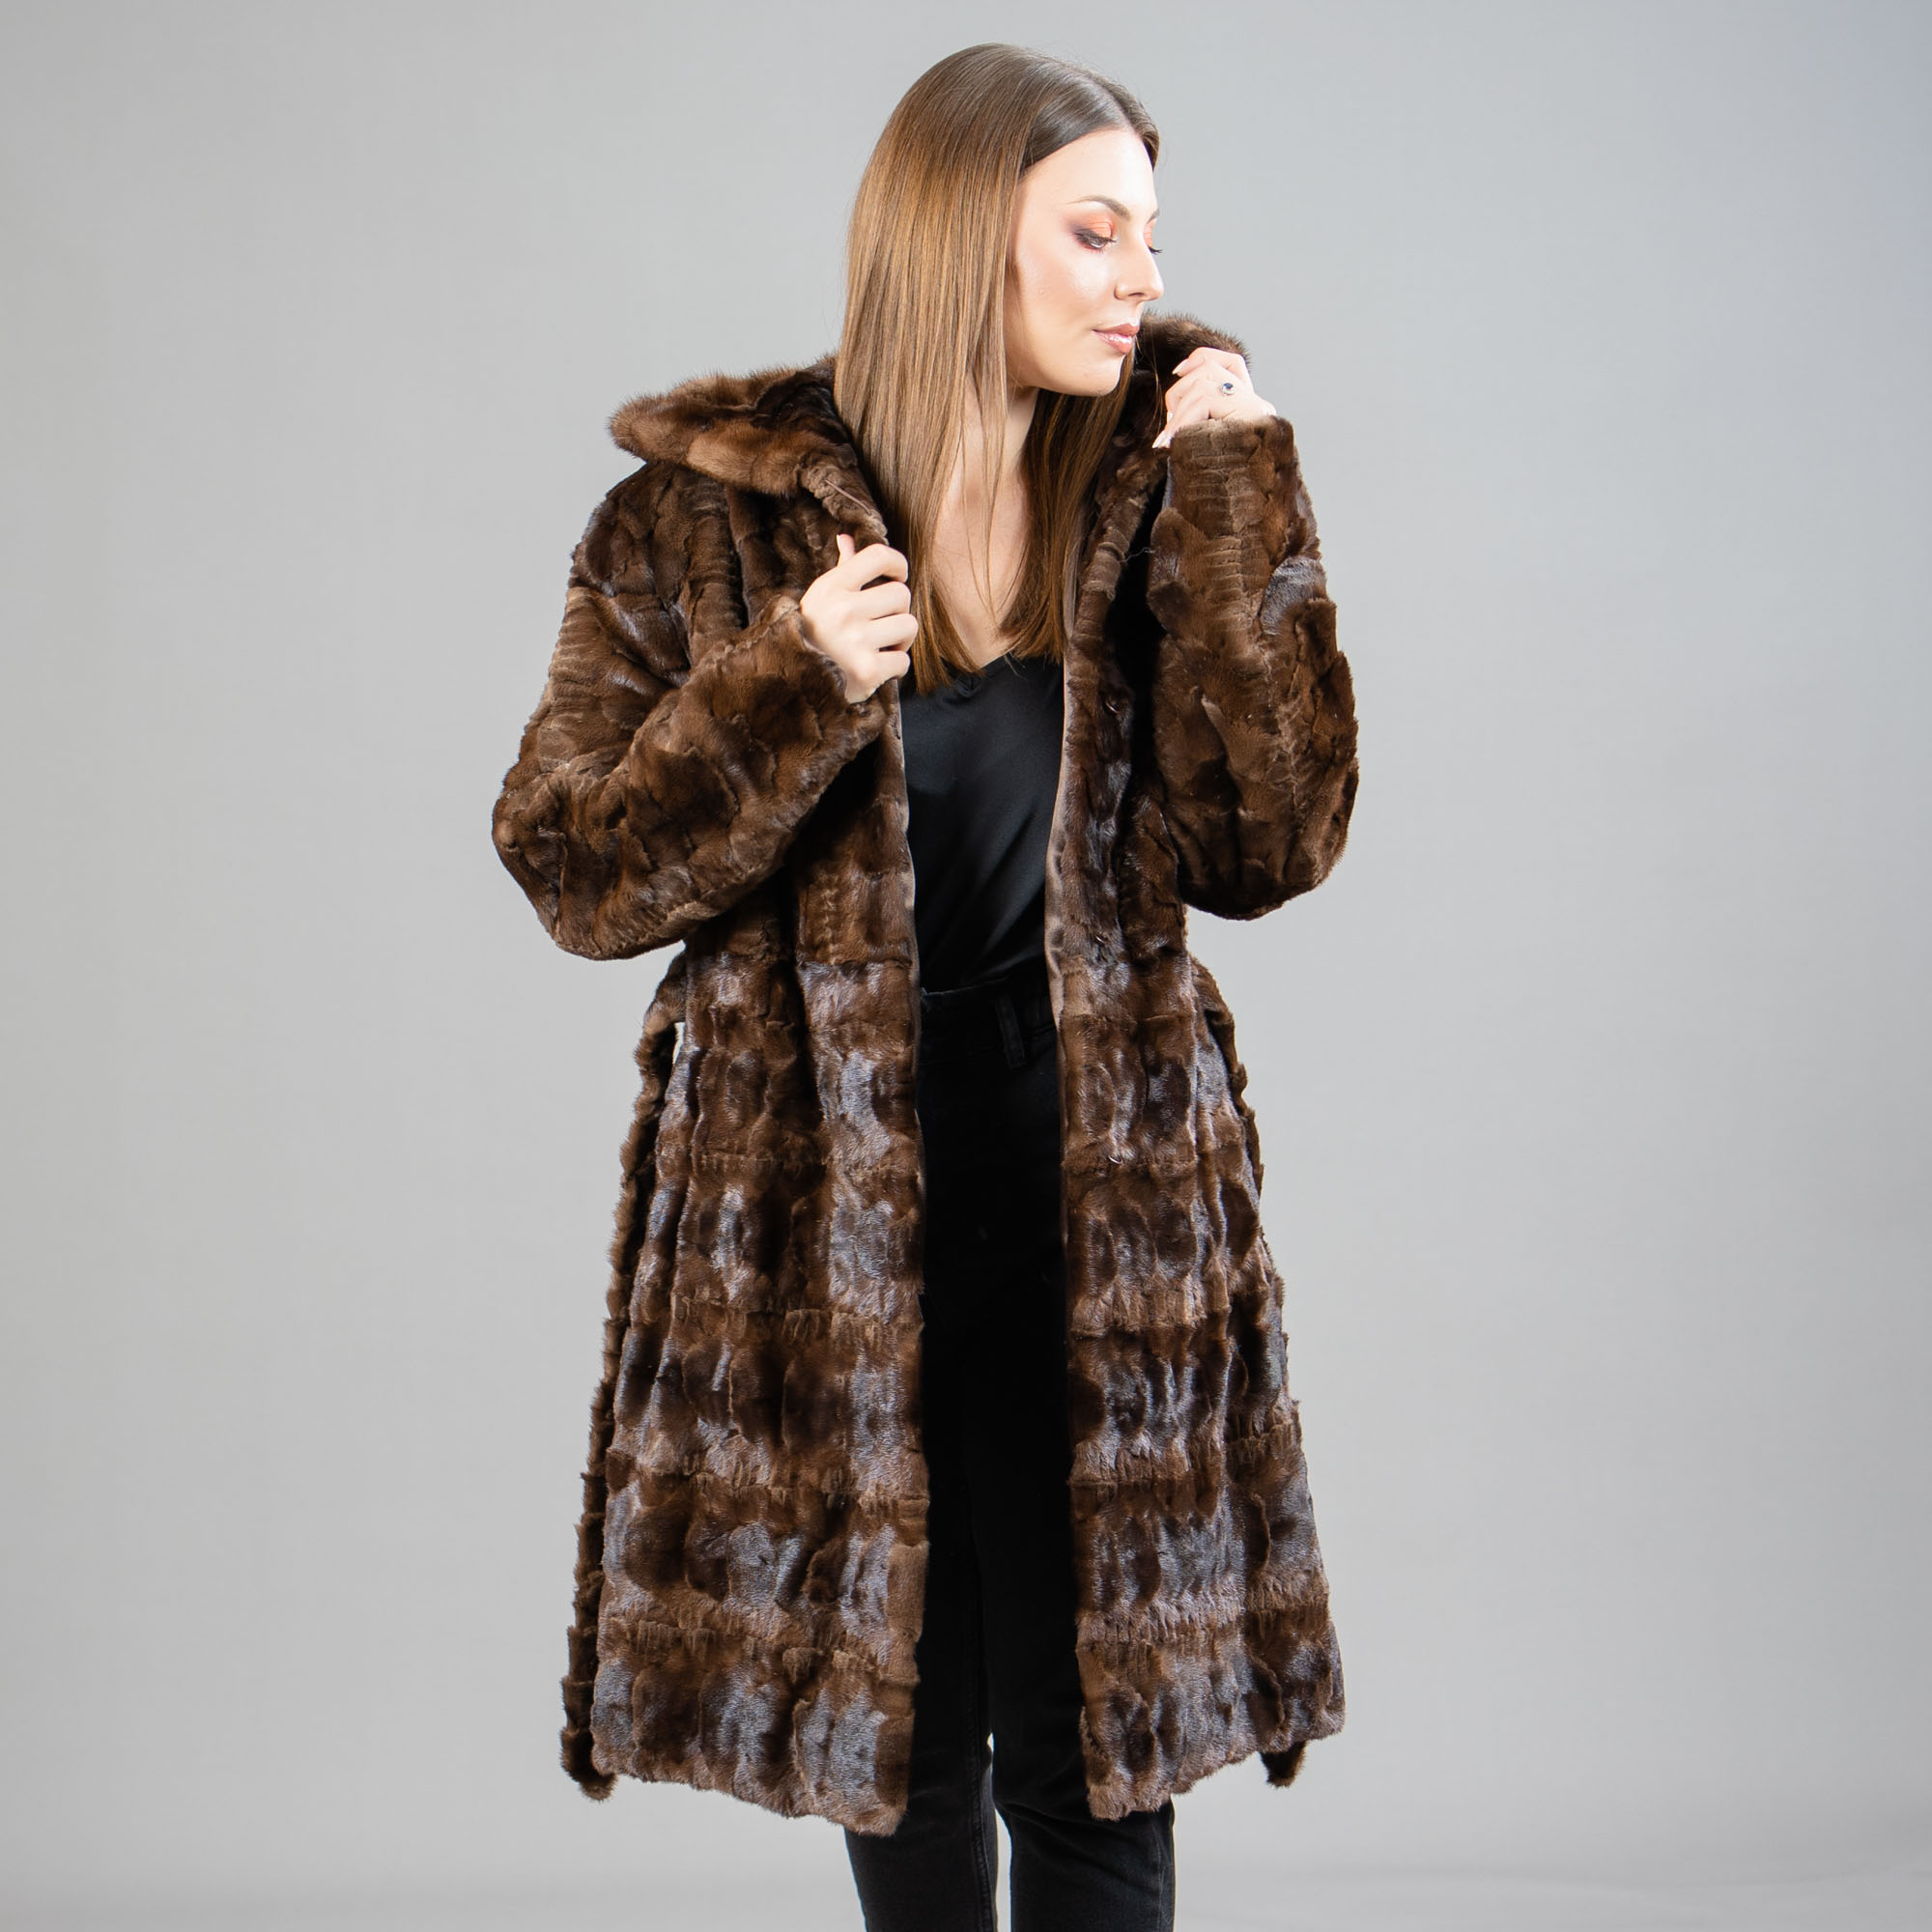 καφέ γούνινο παλτό βιζόν με κουκούλα και ζώνη